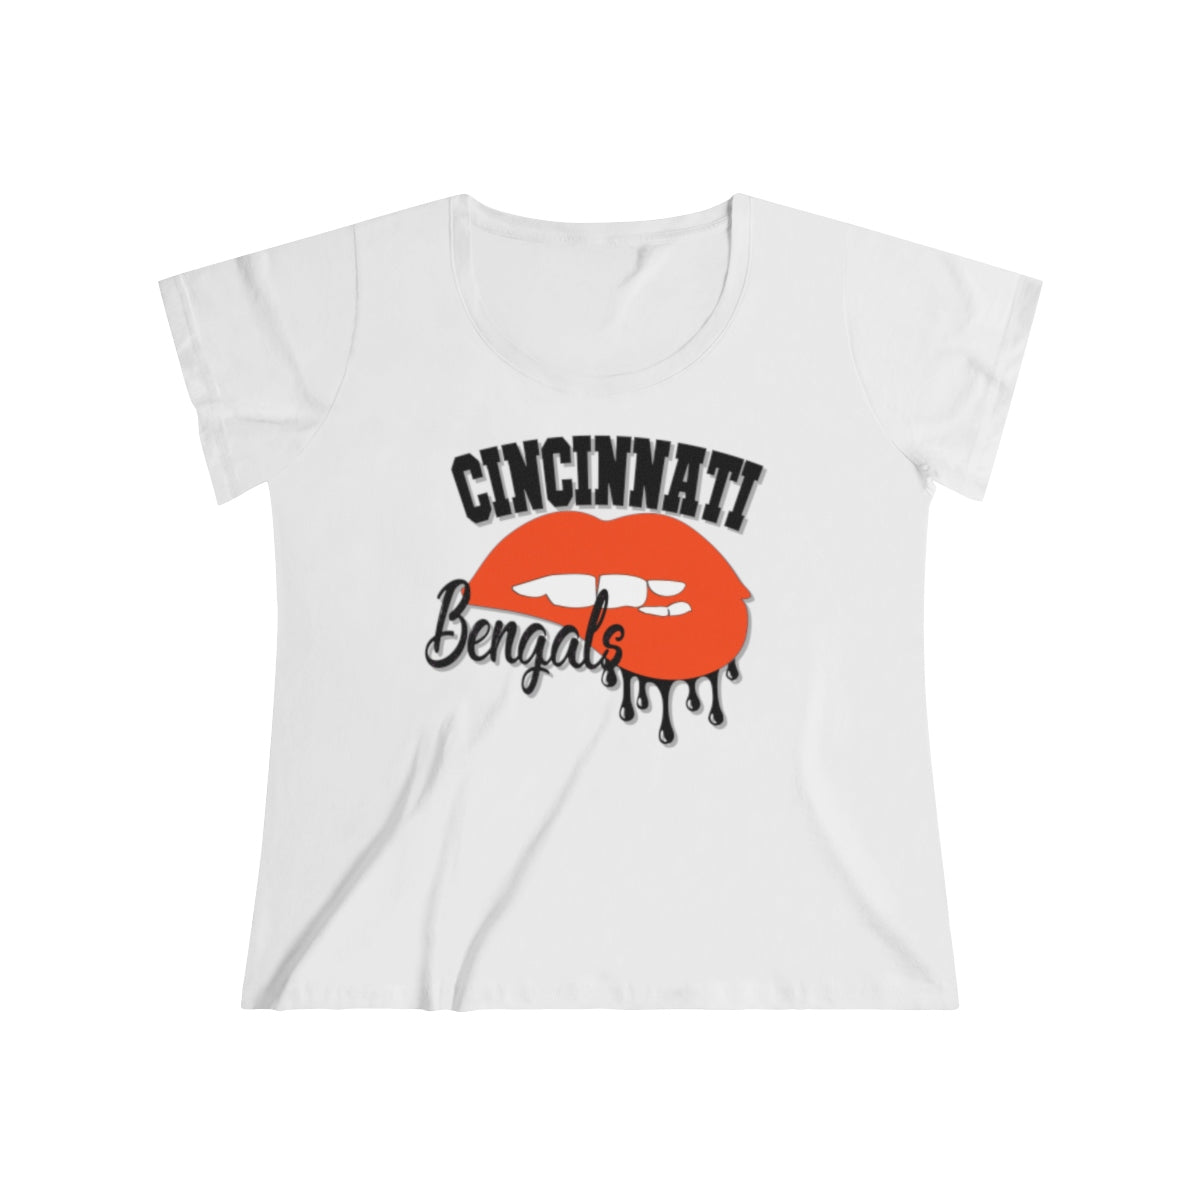 Cincinnati Bengals apparel